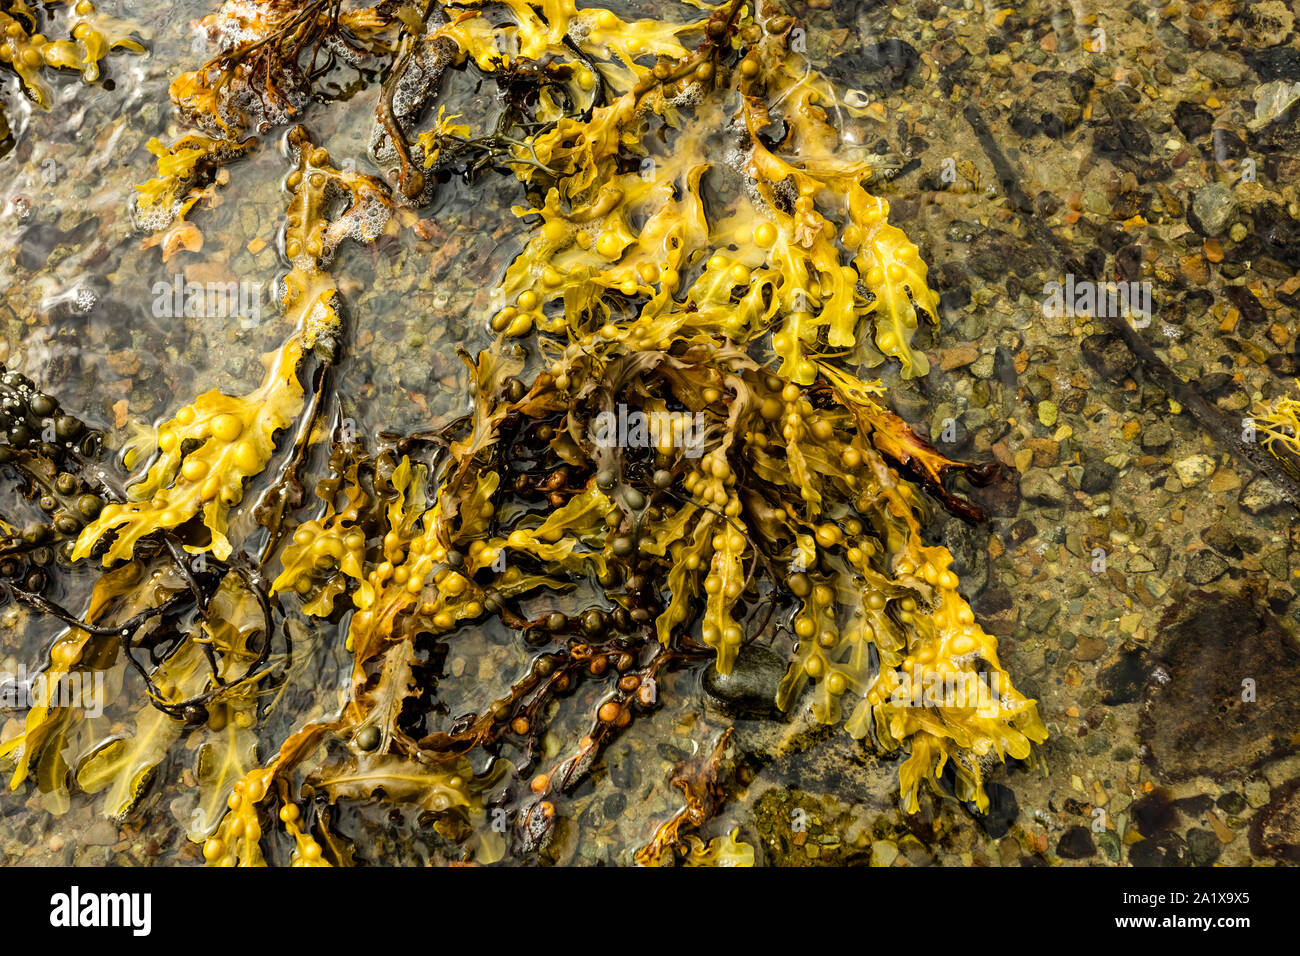 Colorate, fresche Fucus alga, lavato fino a isola delle Ebridi, Scozia. Concetto: la salute e la natura. Paesaggio, orizzontale. Spazio per la copia. Foto Stock